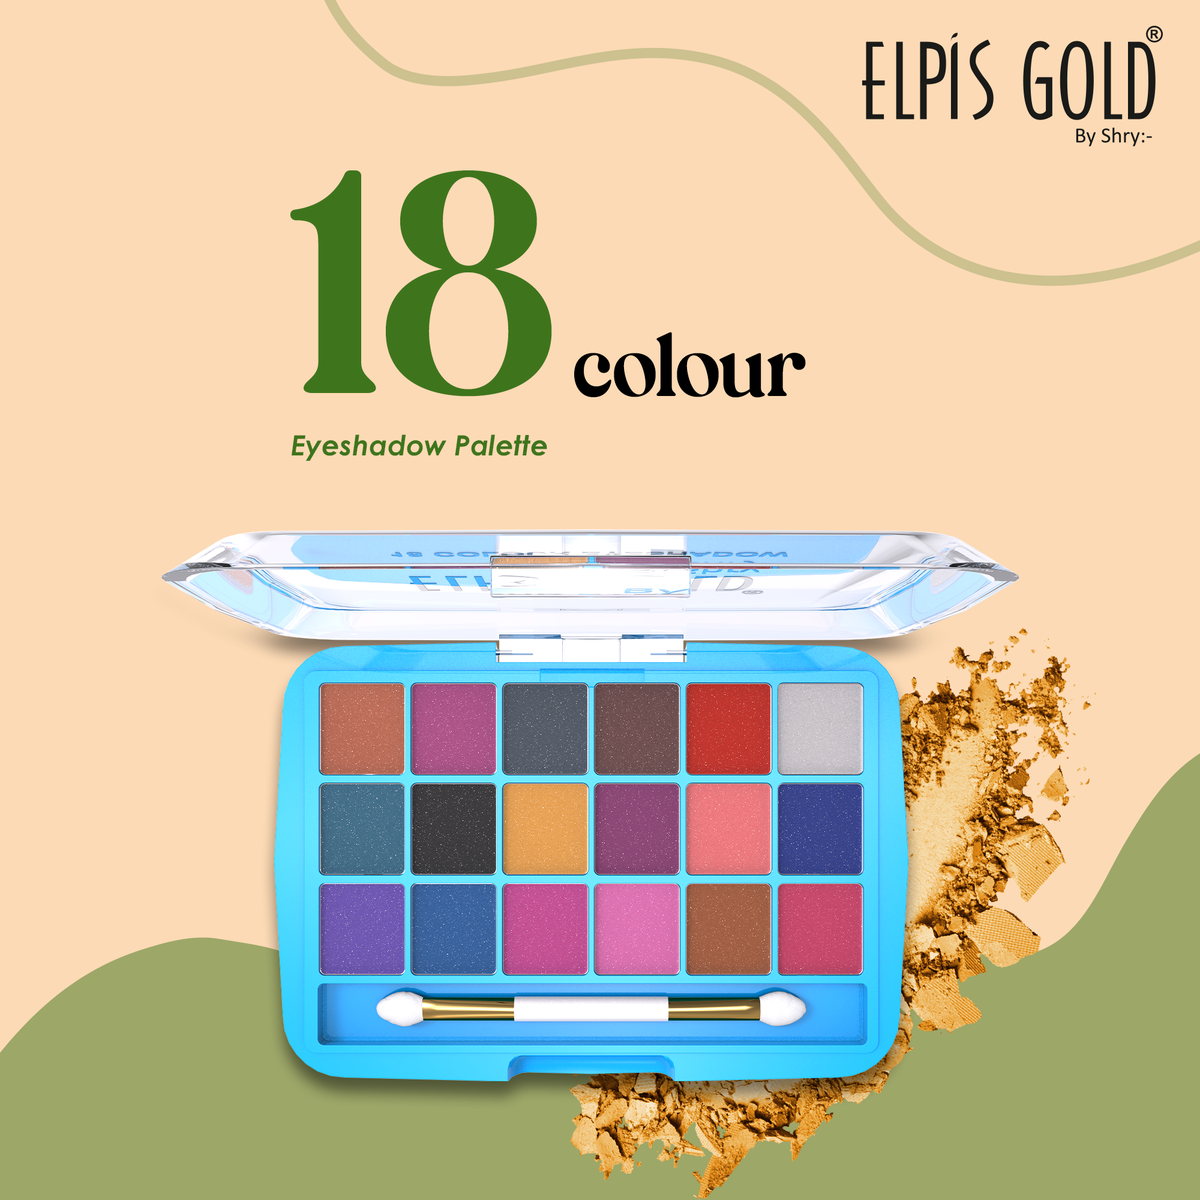 Elpis Gold Waterproof Eyeshadow